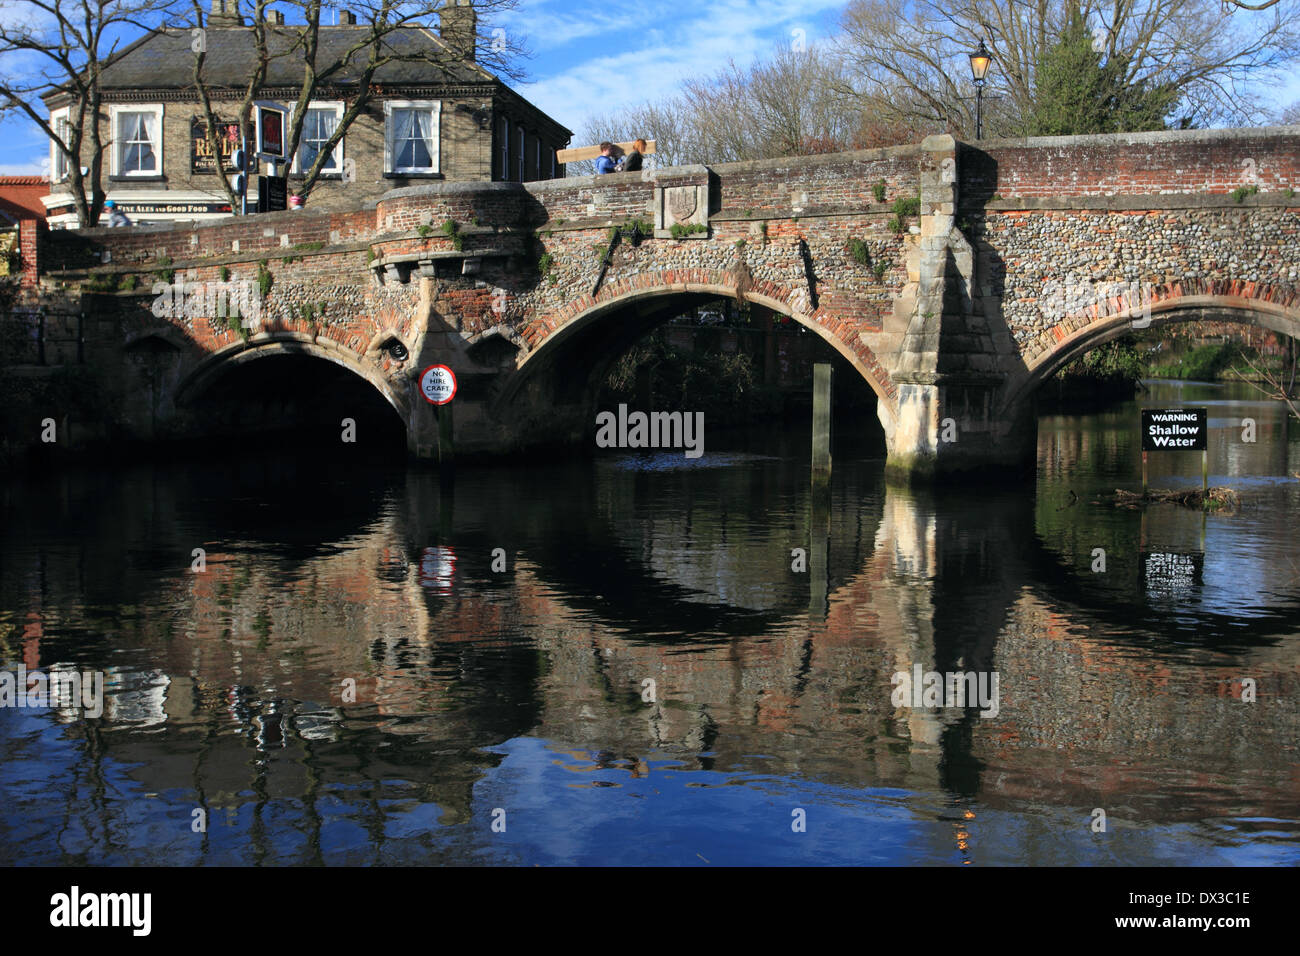 Bishopgate ponte sul fiume Wensum, il Pub Red Lion a sfondo, Norwich, Norfolk, Regno Unito Foto Stock